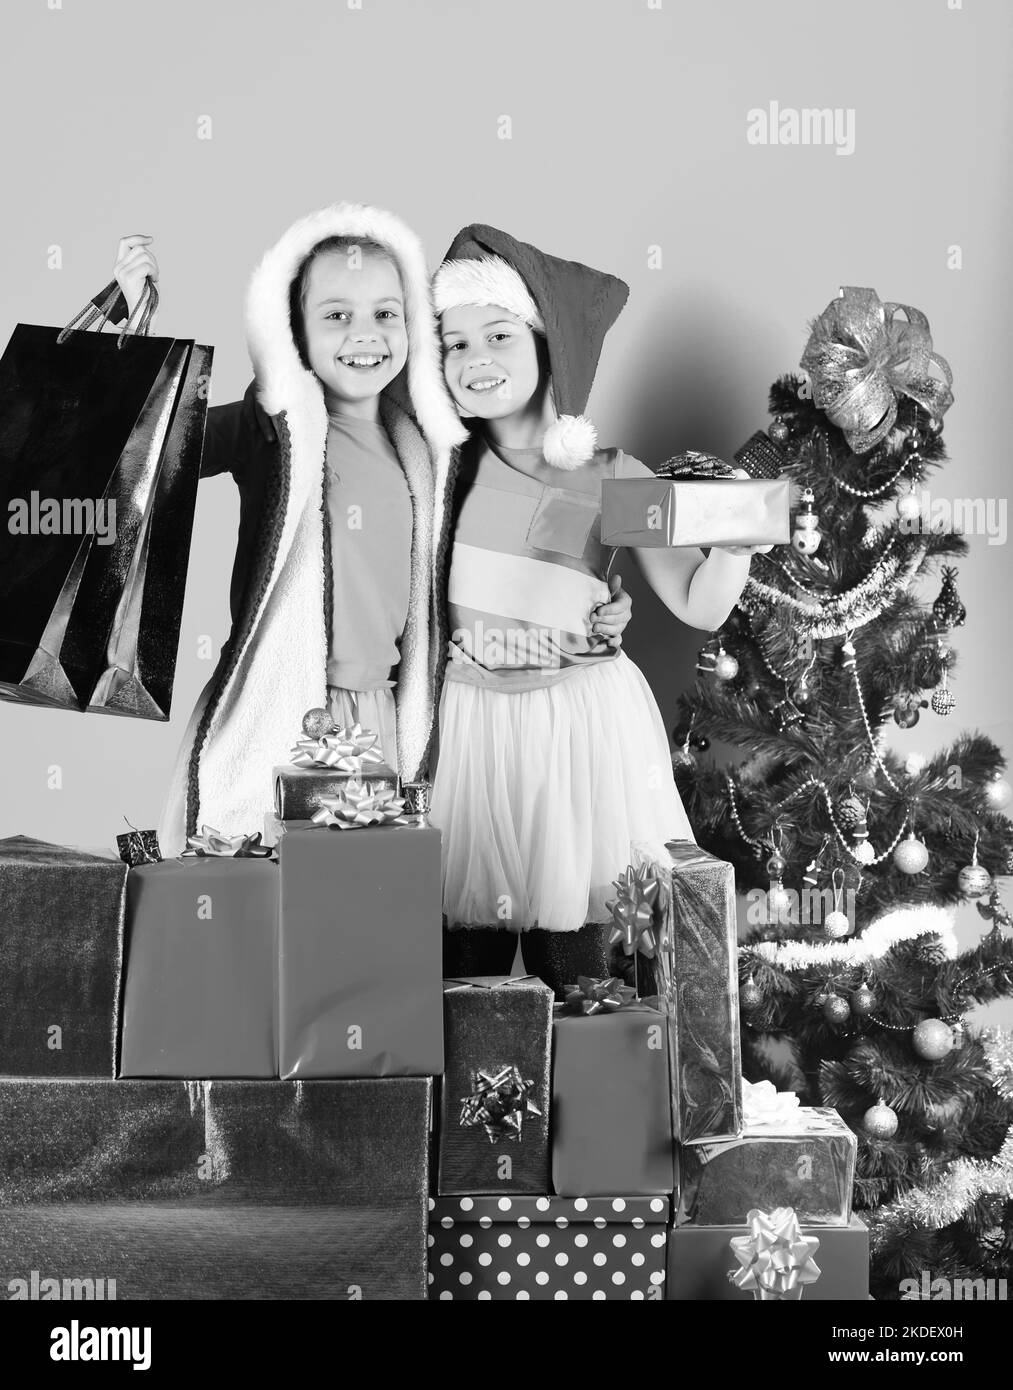 Kindheit, Freizeit und Weihnachten Verkaufskonzept. Kinder in Santa Claus  Stockfotografie - Alamy